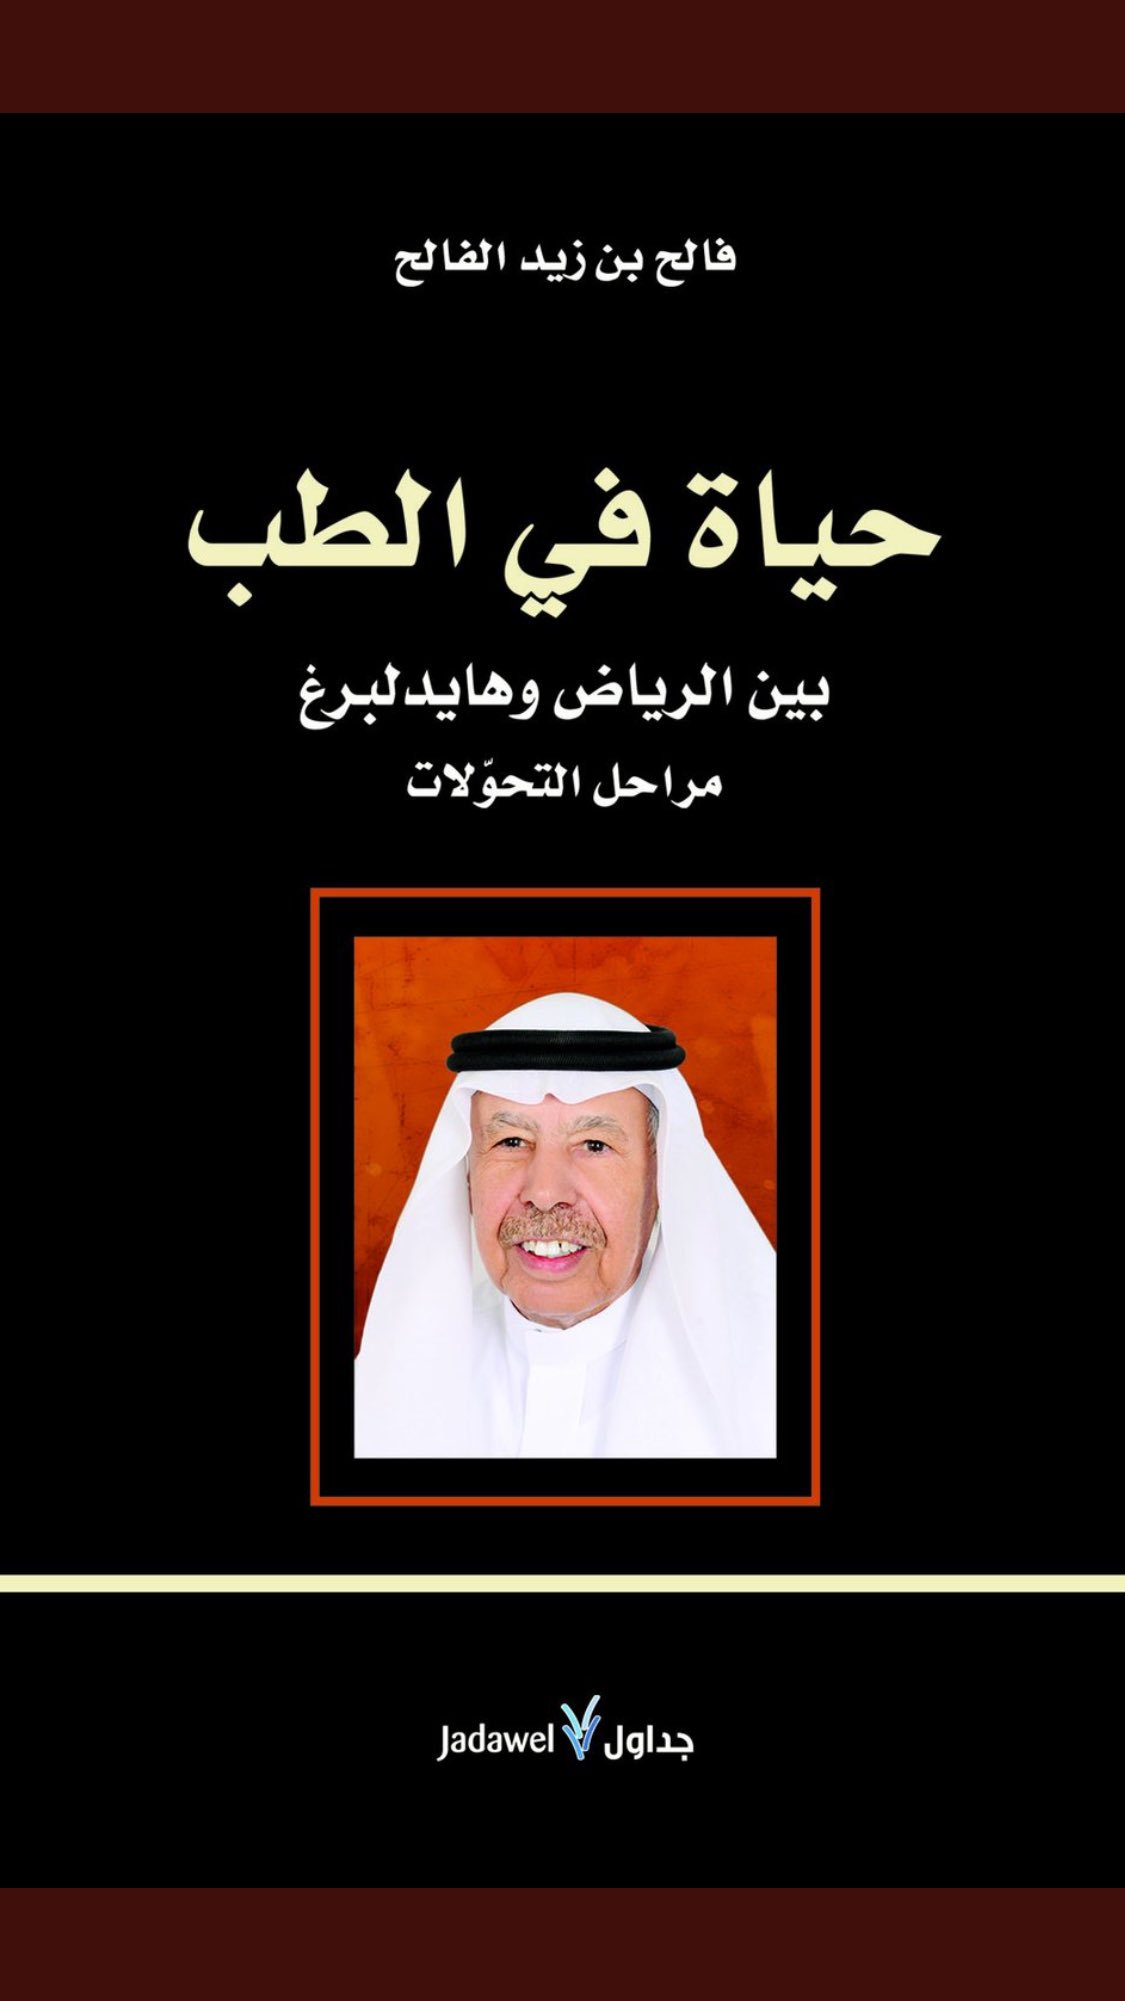 الغلاف العربي لكتاب الطبيب السعودي فالح الفالح "حياة في الطب بين الرياض وهايدلبرغ". 